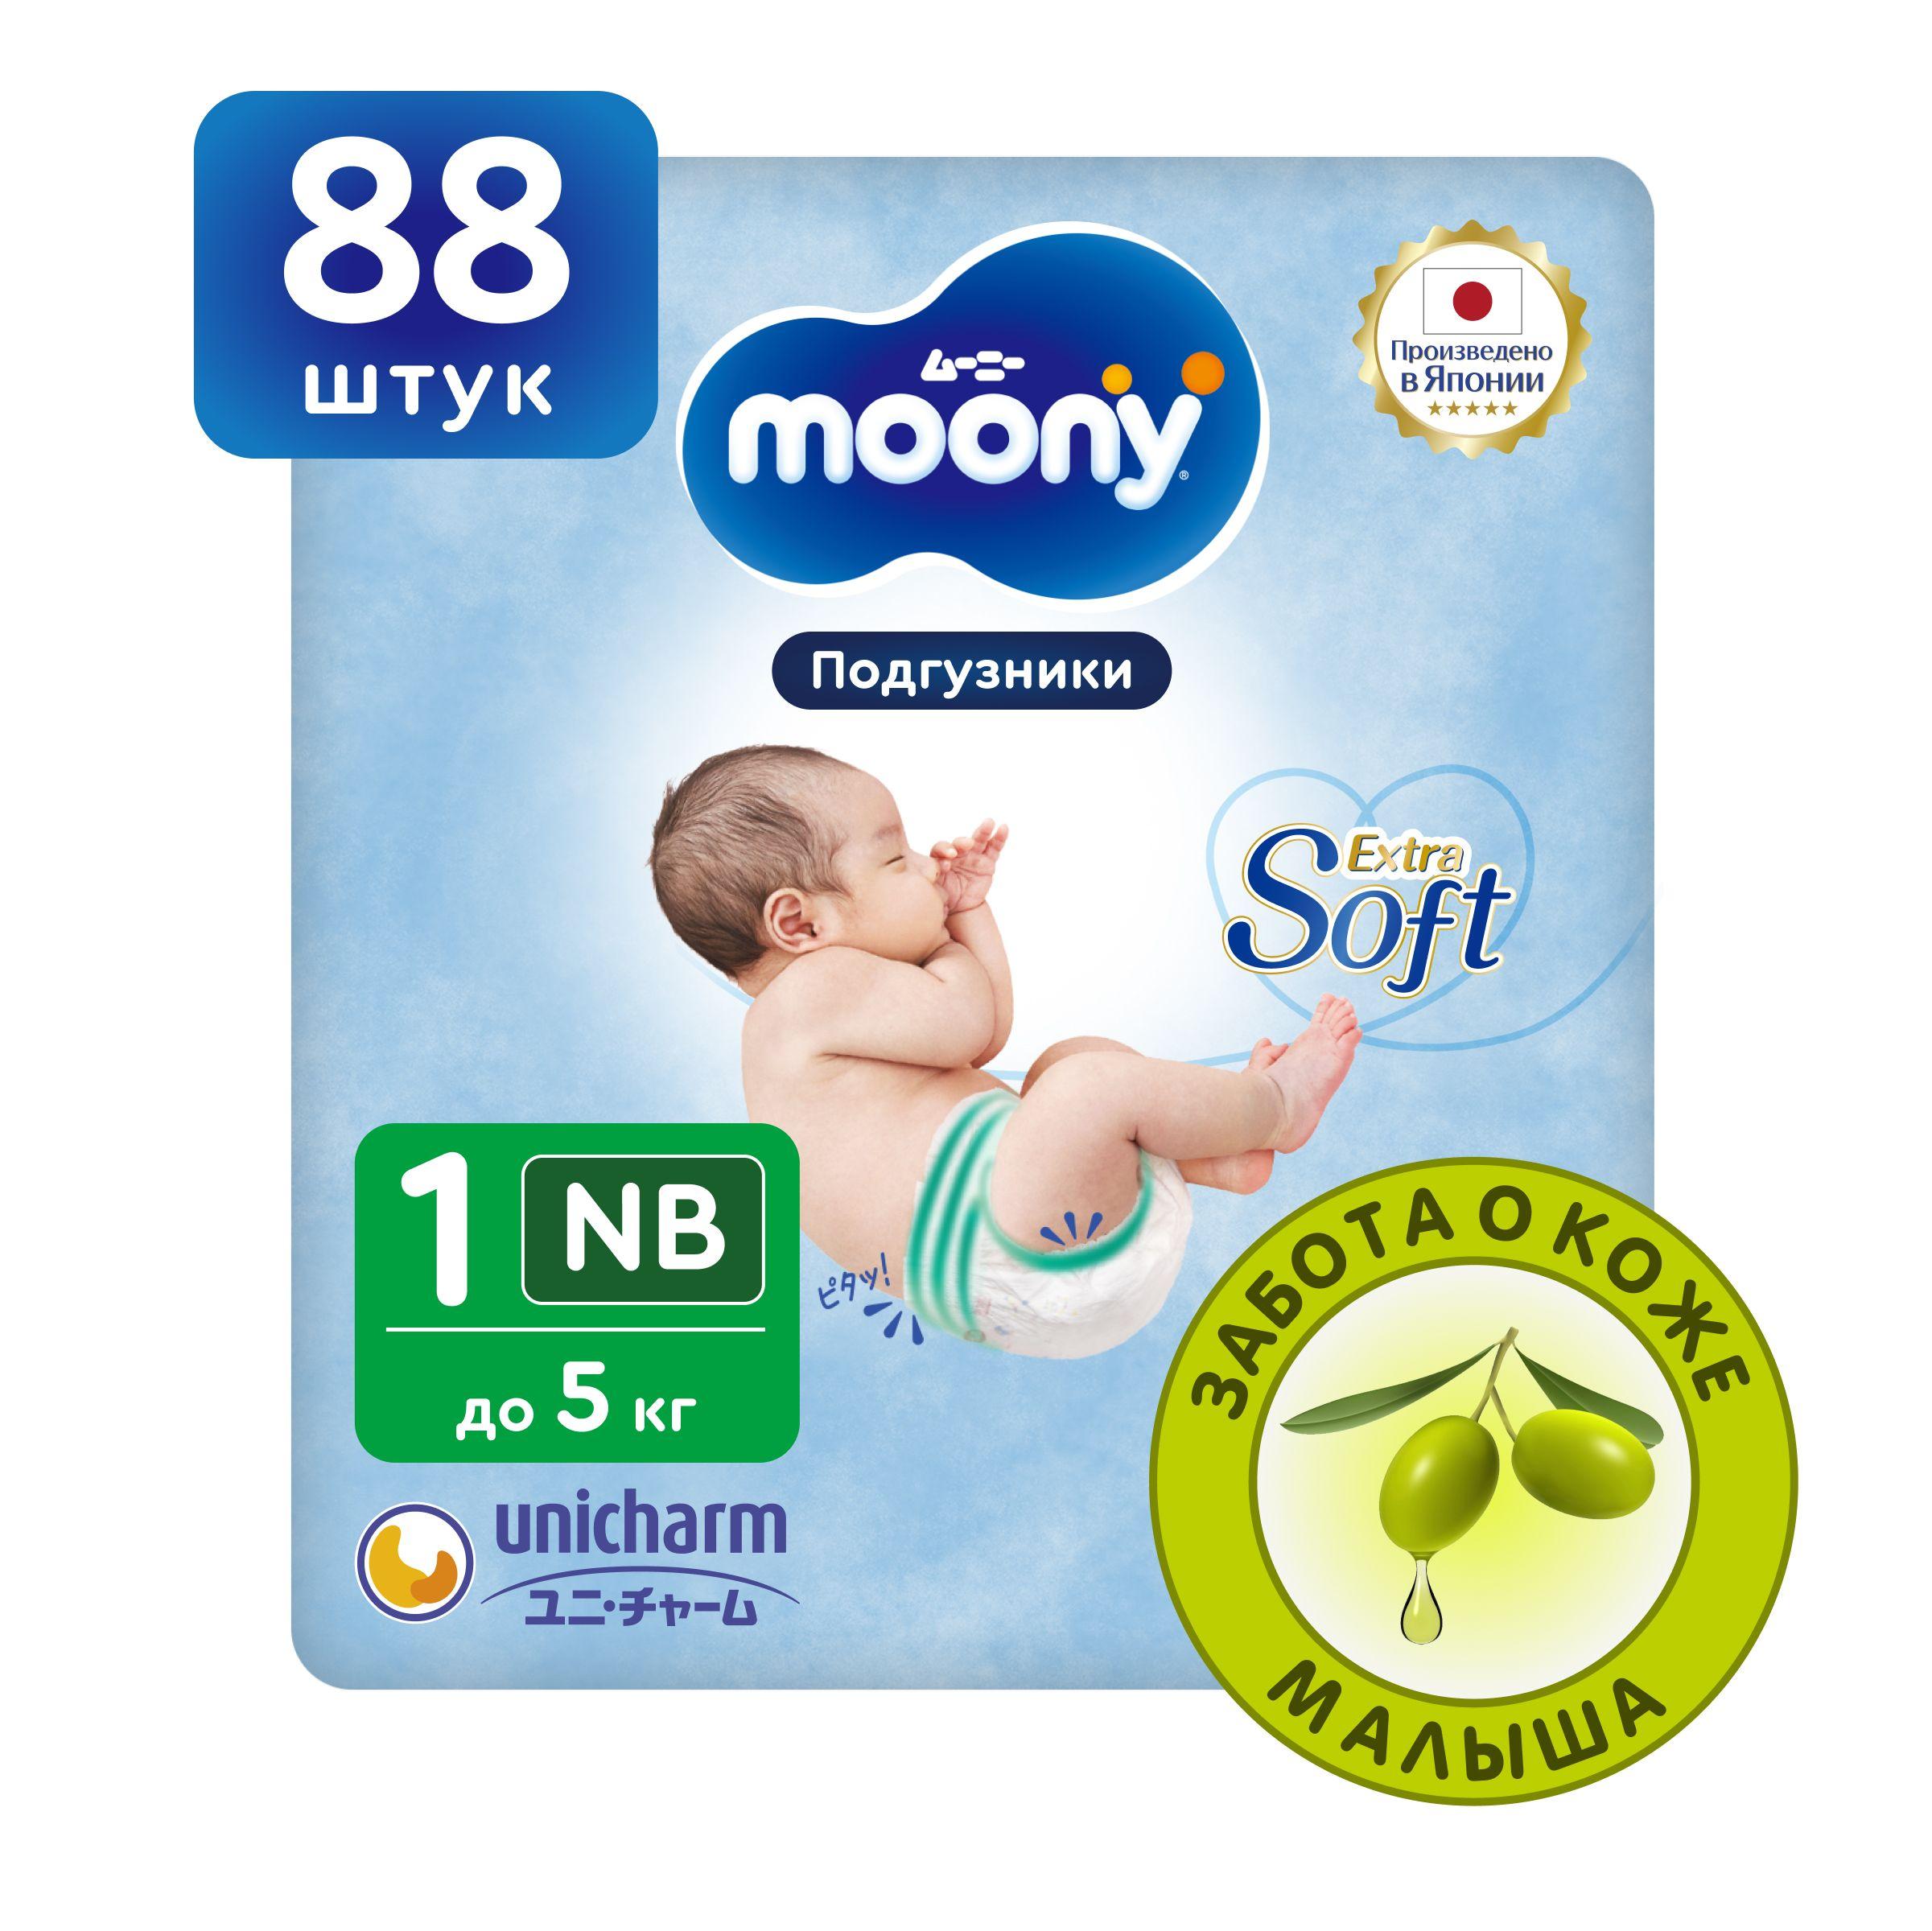 Moony | MOONY Японские подгузники для новорожденных Extra Soft 1 размер NB до 5 кг, 88 шт